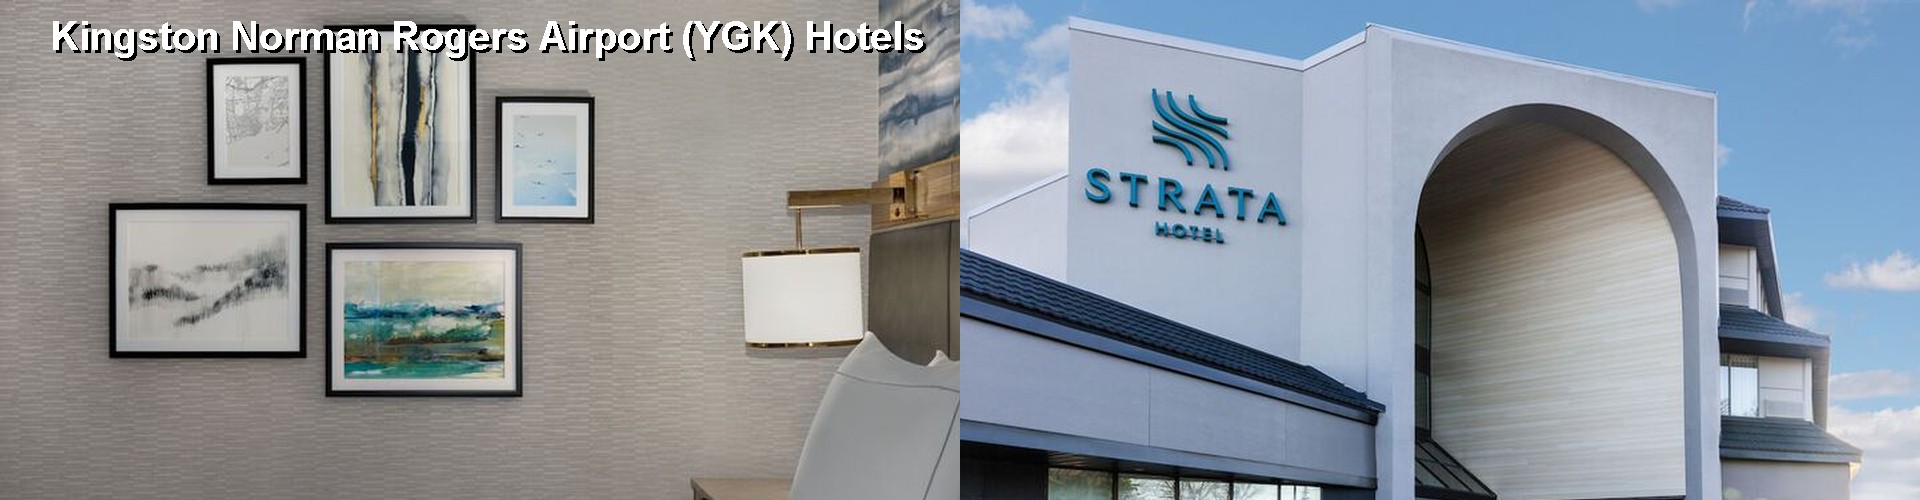 3 Best Hotels near Kingston Norman Rogers Airport (YGK)